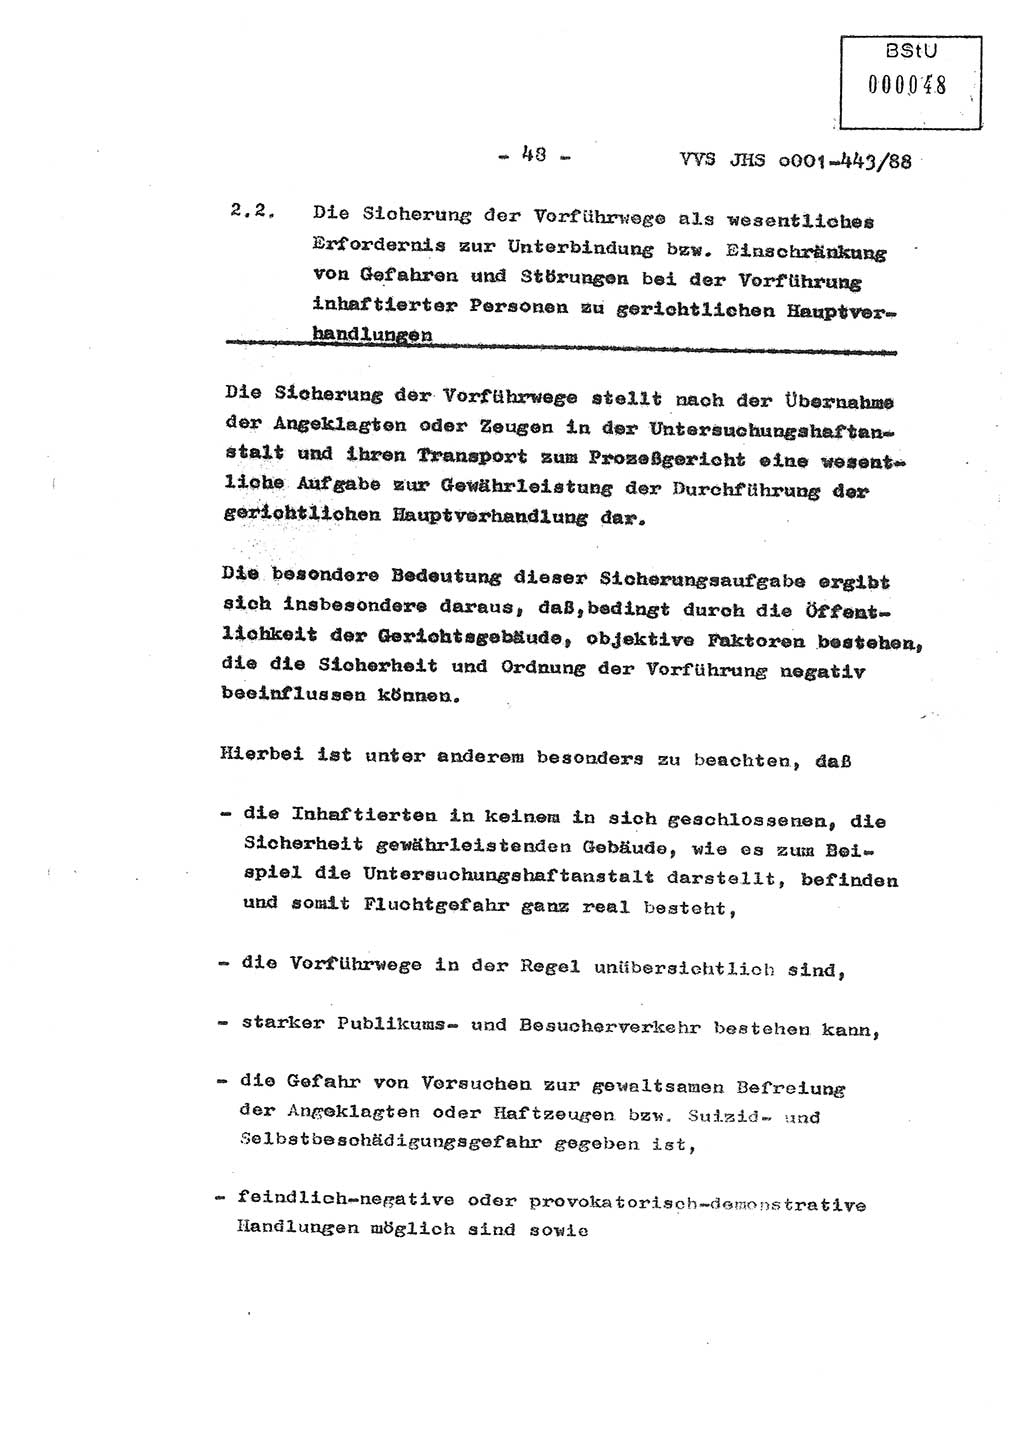 Diplomarbeit Hauptmann Michael Rast (Abt. ⅩⅣ), Major Bernd Rahaus (Abt. ⅩⅣ), Ministerium für Staatssicherheit (MfS) [Deutsche Demokratische Republik (DDR)], Juristische Hochschule (JHS), Vertrauliche Verschlußsache (VVS) o001-443/88, Potsdam 1988, Seite 48 (Dipl.-Arb. MfS DDR JHS VVS o001-443/88 1988, S. 48)